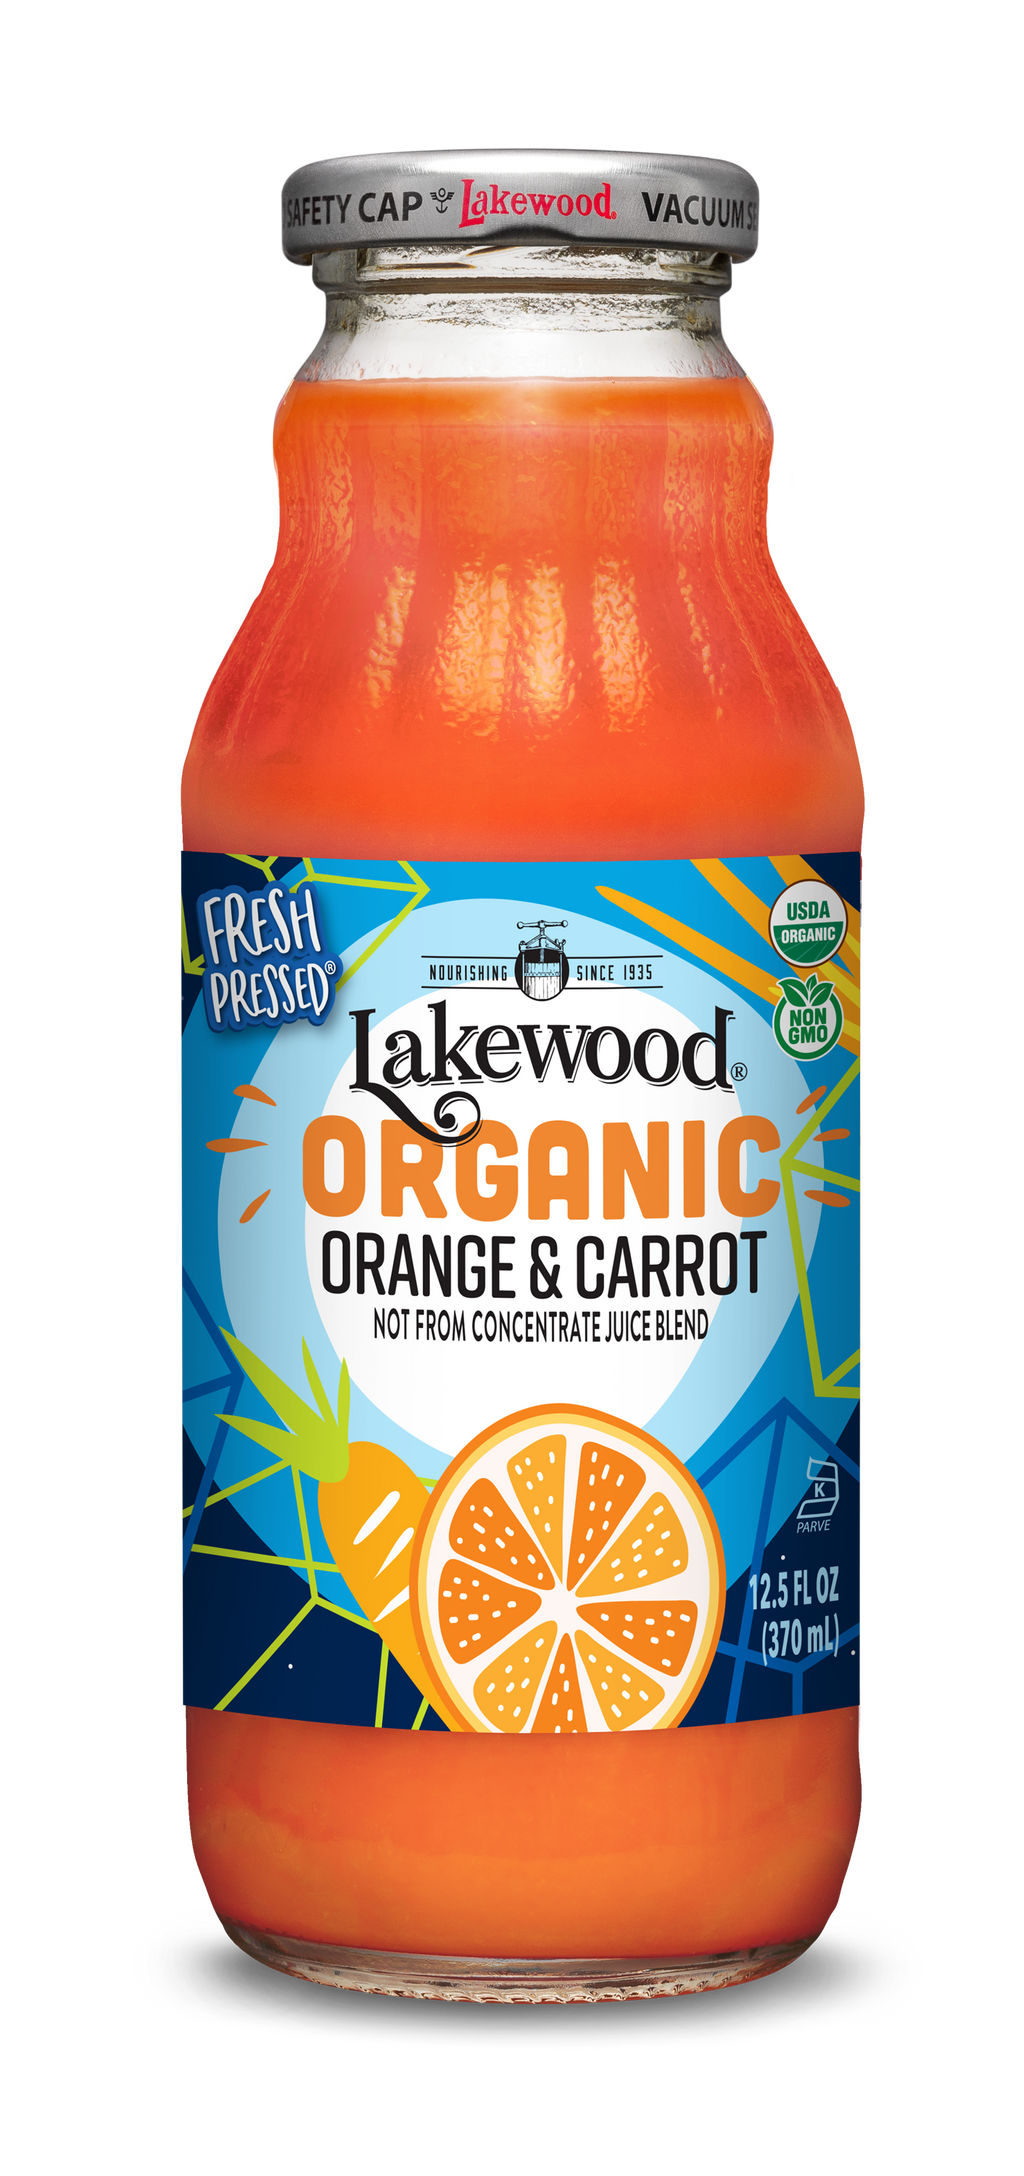 lakewood-organic-orange-carrot-juice-blend-fresh-pressed